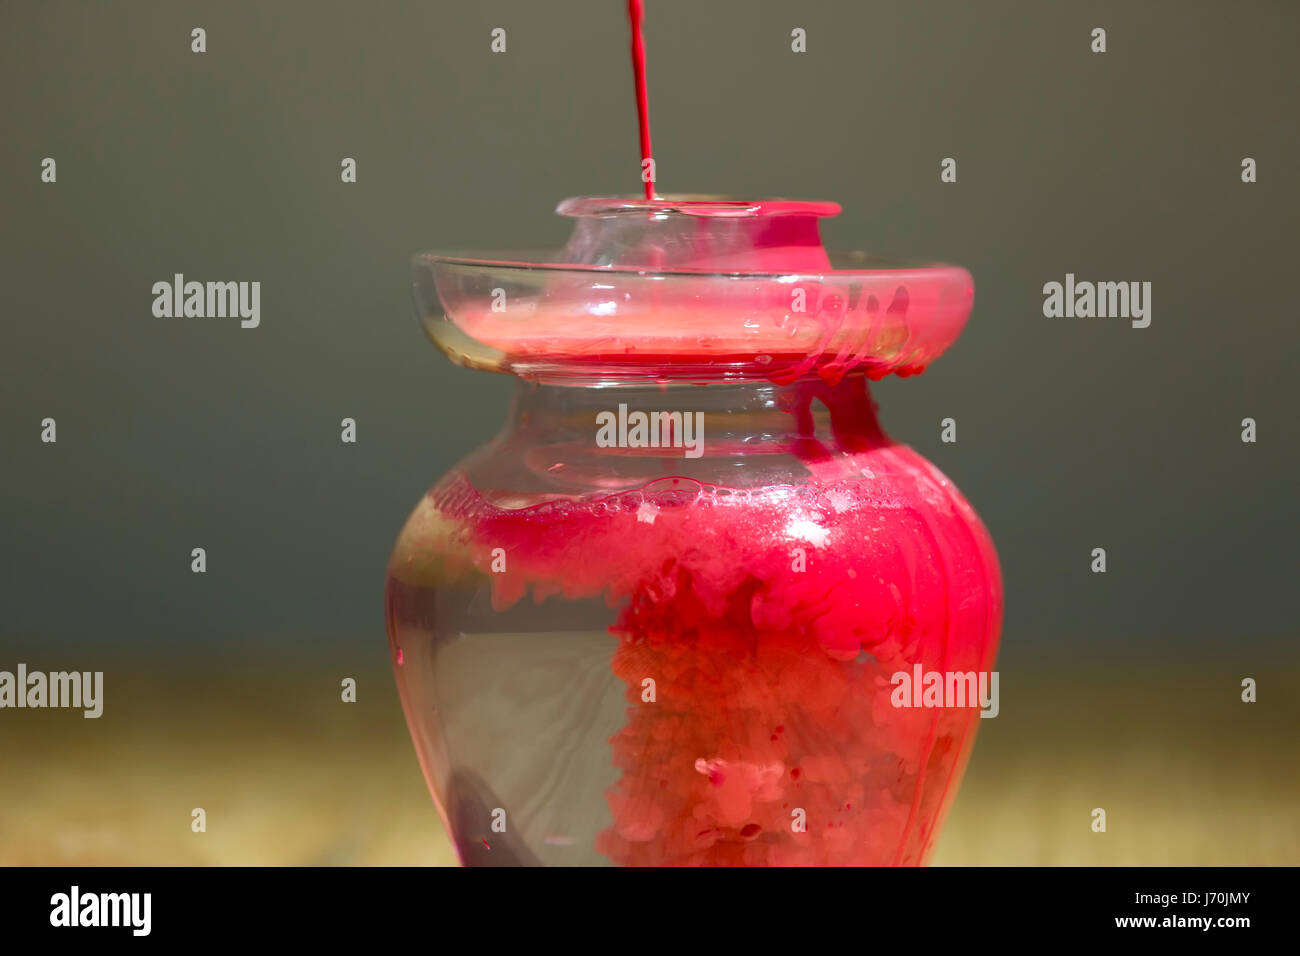 Pintura roja cayendo en el agua en una jarra de vidrio. Foto de stock